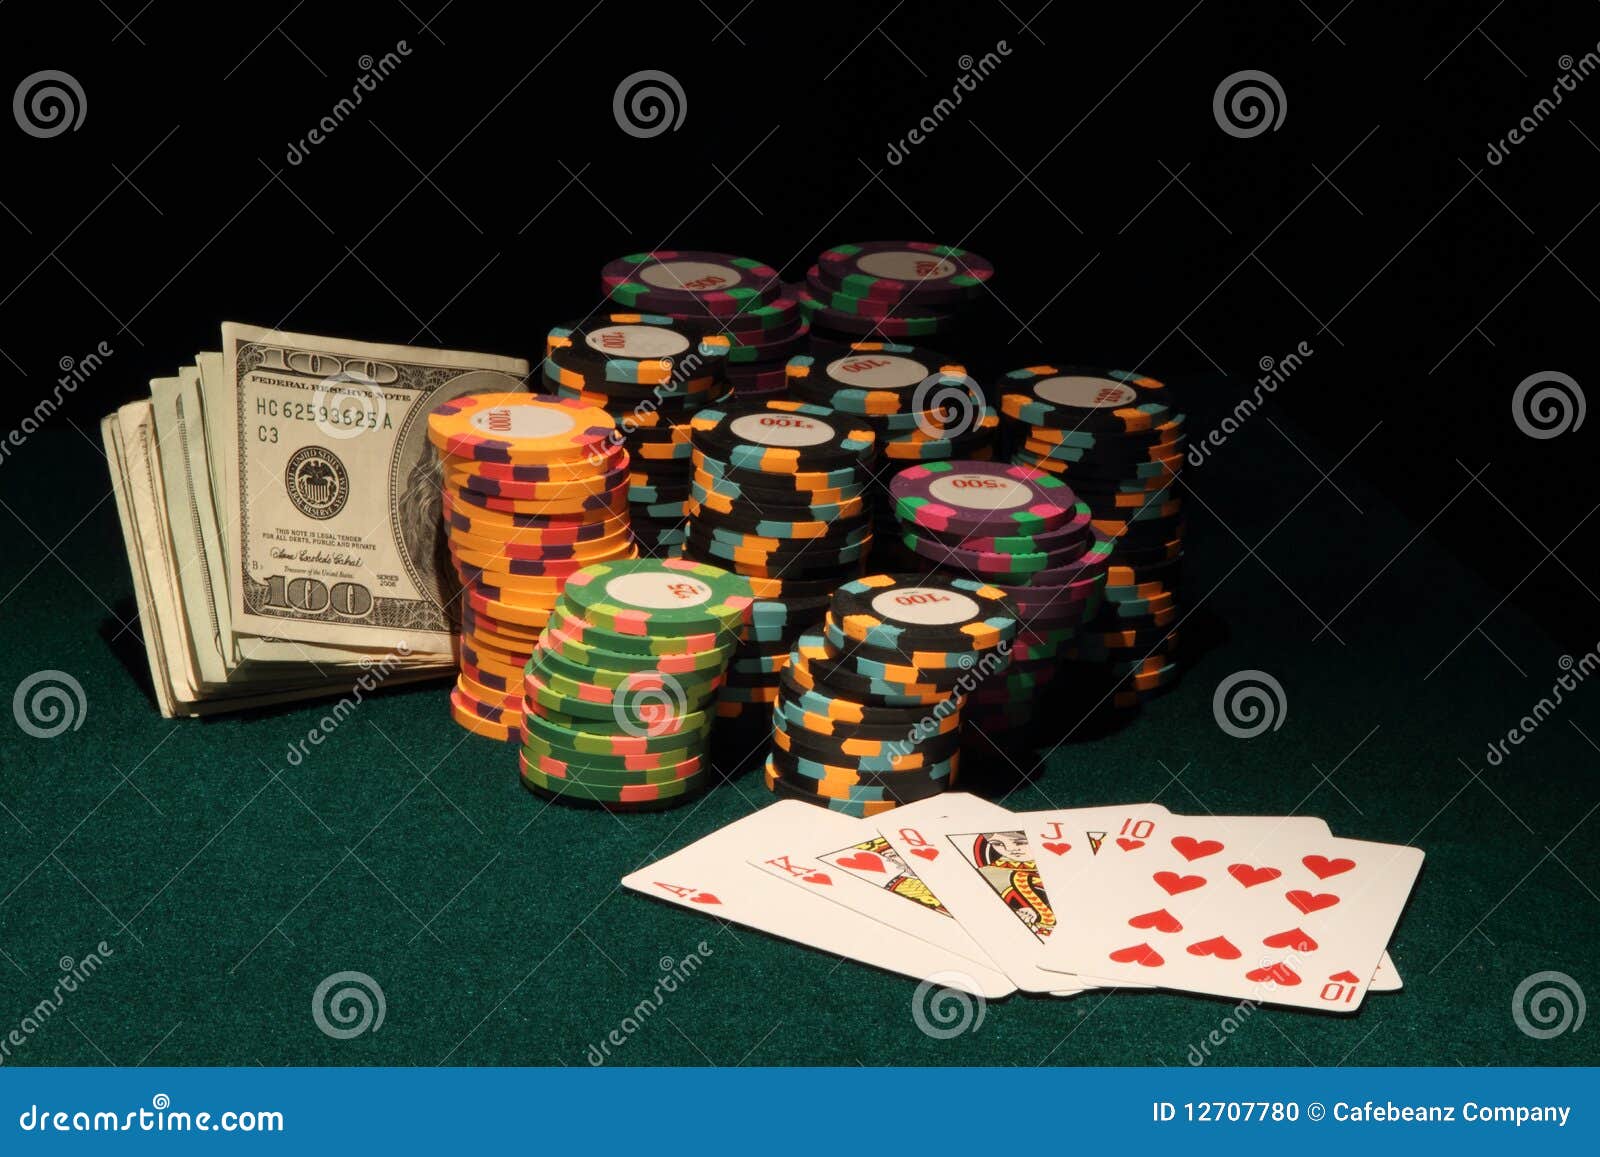 Juegos de casino - 94021